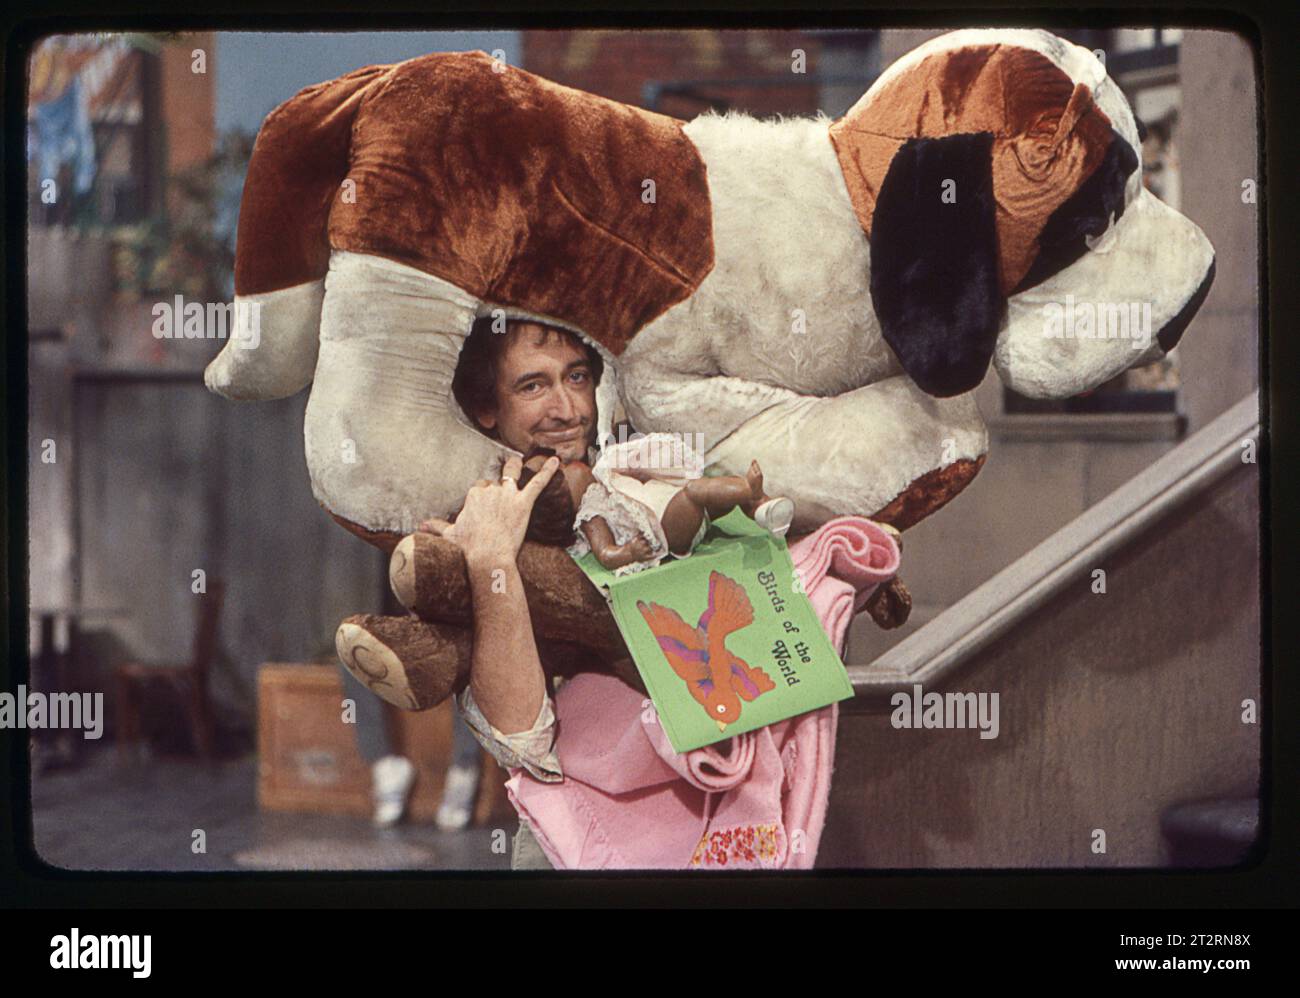 Ein Foto von 1977 aus dem Set der Sesamstraße mit dem Schauspieler Bob McGrath, der Ben Johnson spielte, der ein Gesicht mit einem großen Plüschhund auf seinem Kopf machte. In einem Studio am Broadway an der Upper West Side von Manhattan. Stockfoto